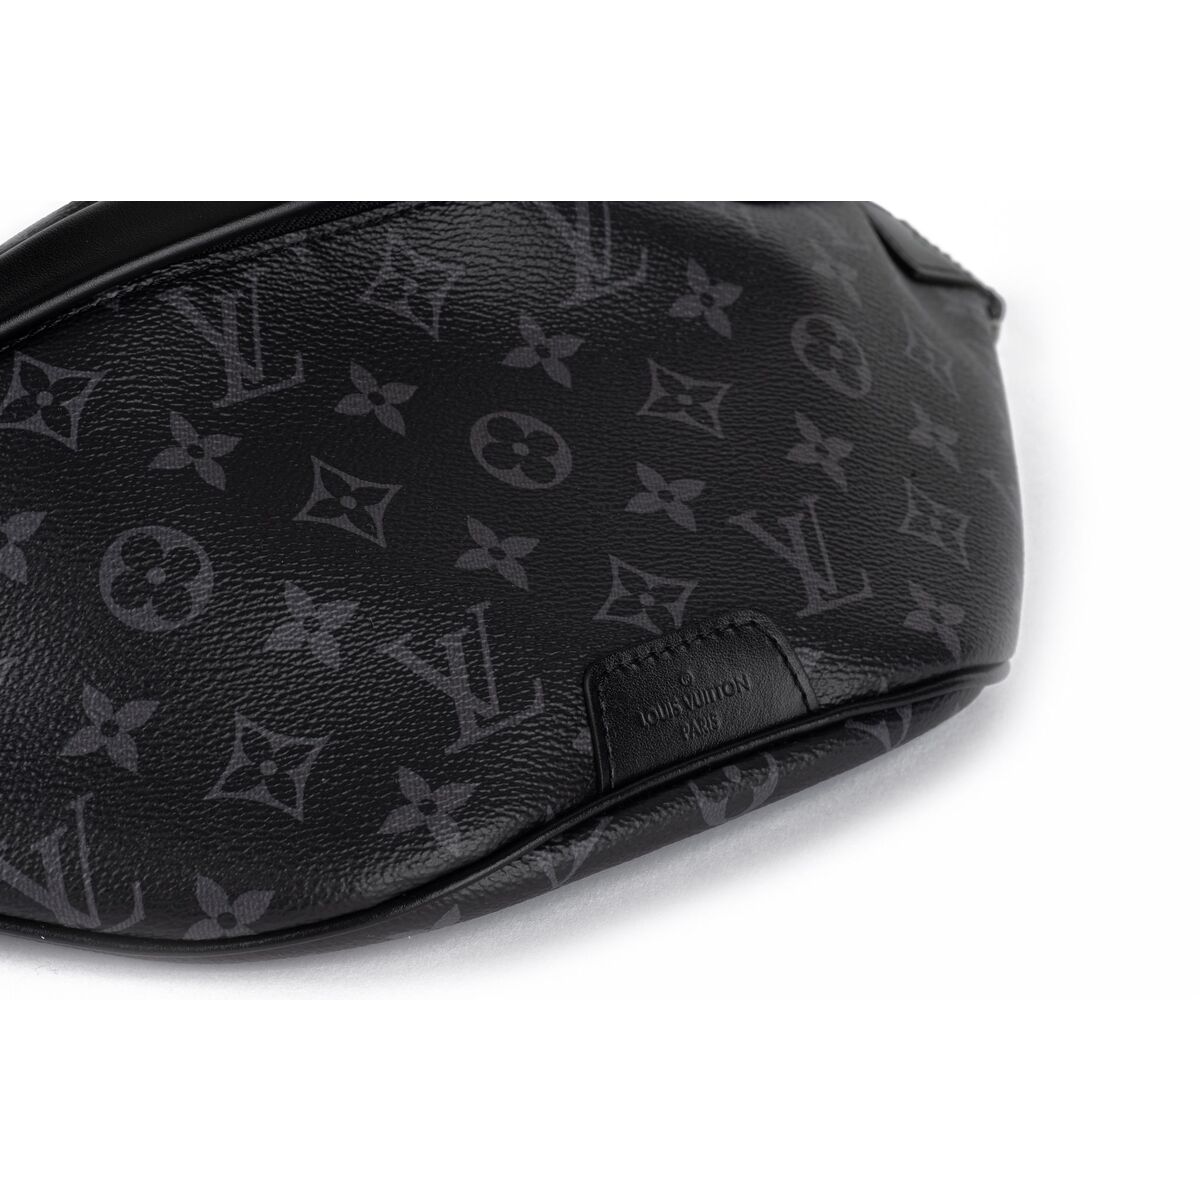 Vuitton NIB Gents Black Monogram Bumbag